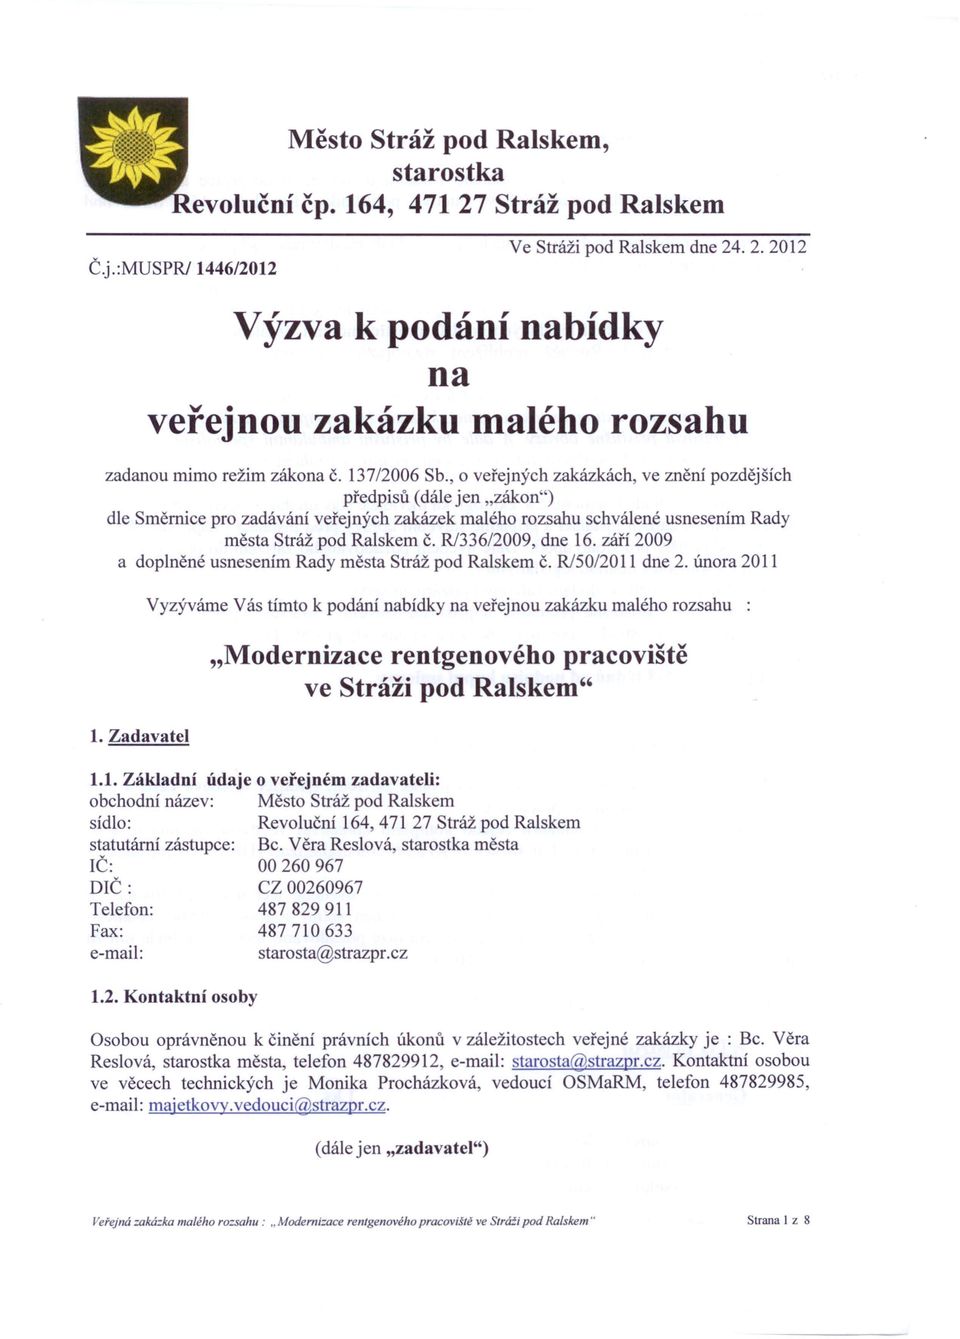 R/336/2009, dne 16. září 2009 a doplněné usnesením Rady města Stráž pod Ralskem č. R/50/2011 dne 2. února 2011 1.